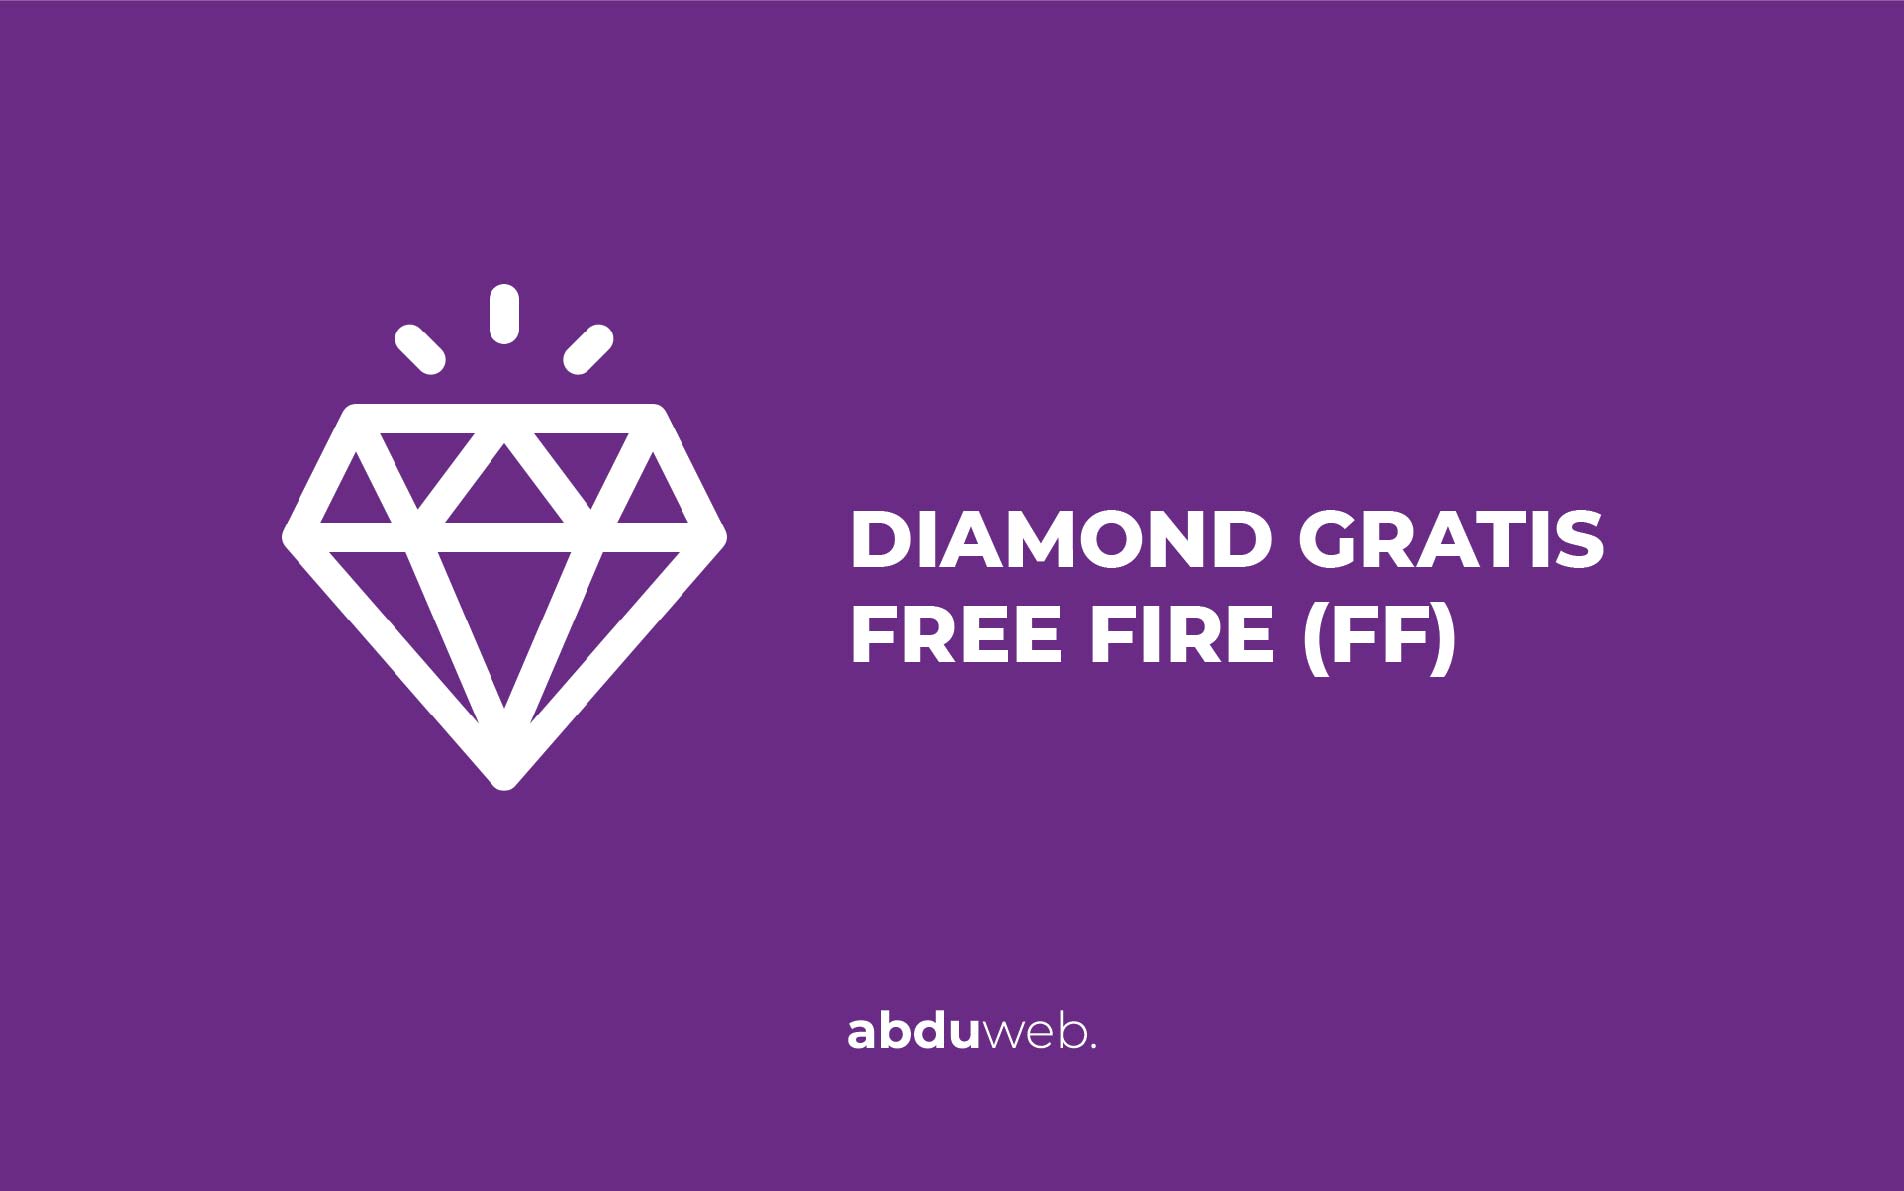 Aplikasi diamond gratis free fire